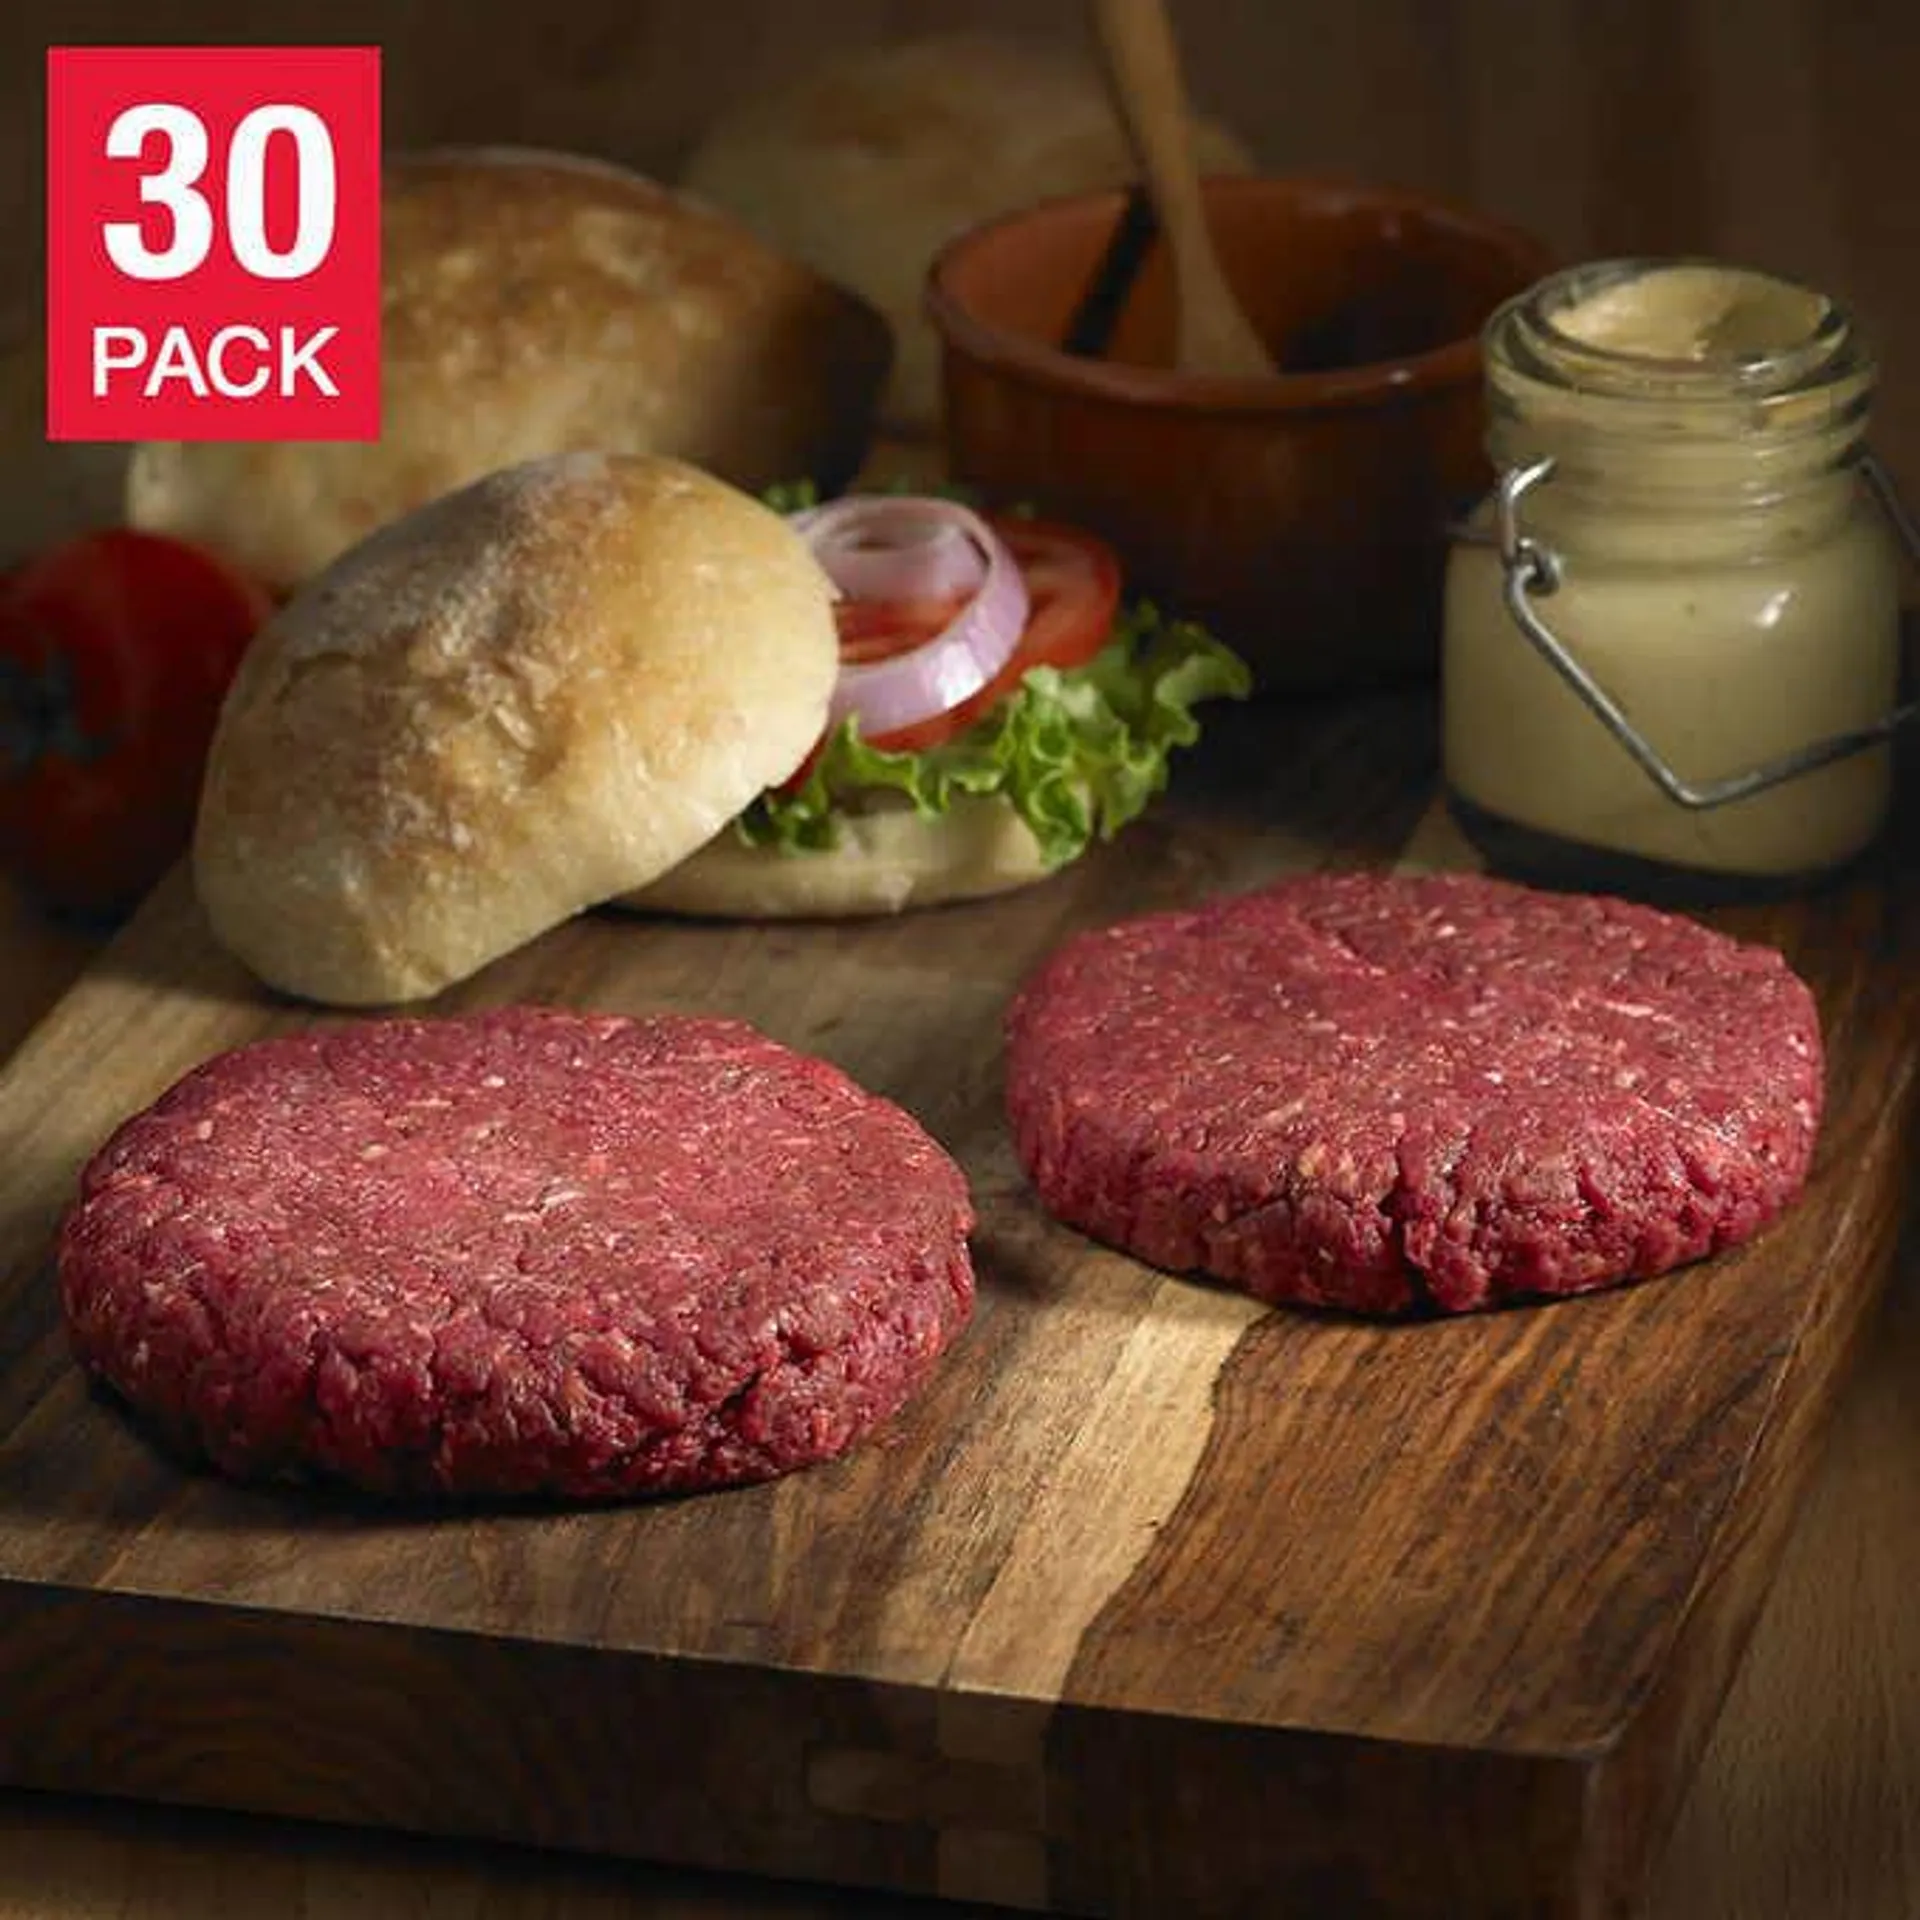 Northfork Bison Burger 3 x 151 g (5.33 oz) x 10 pack